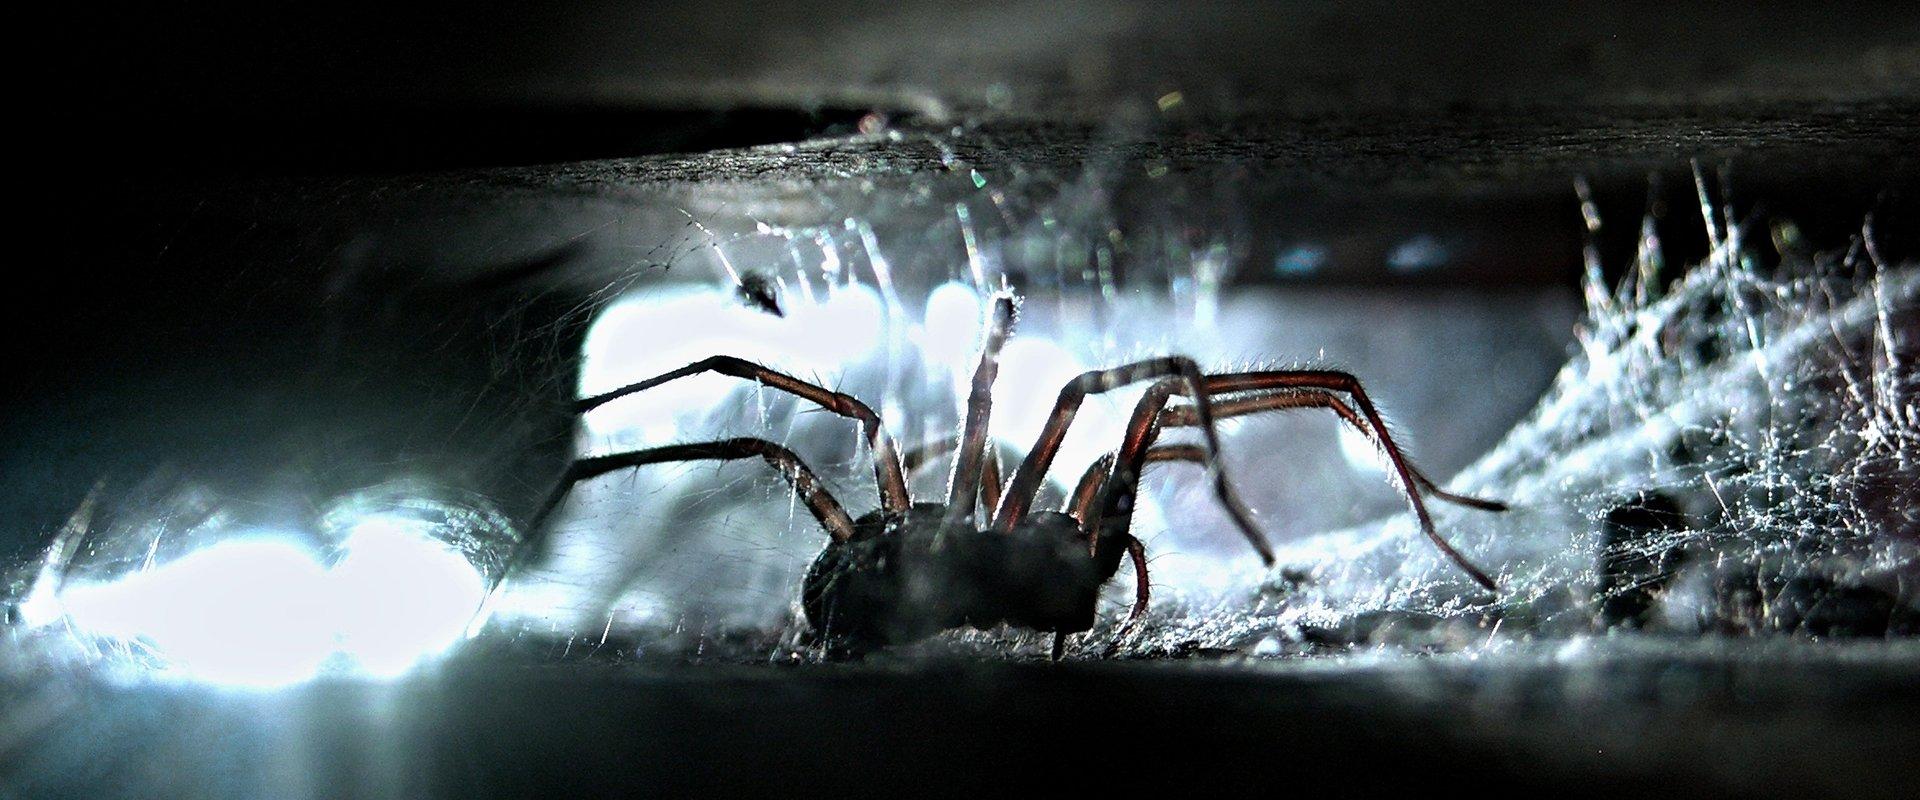 spider in the dark